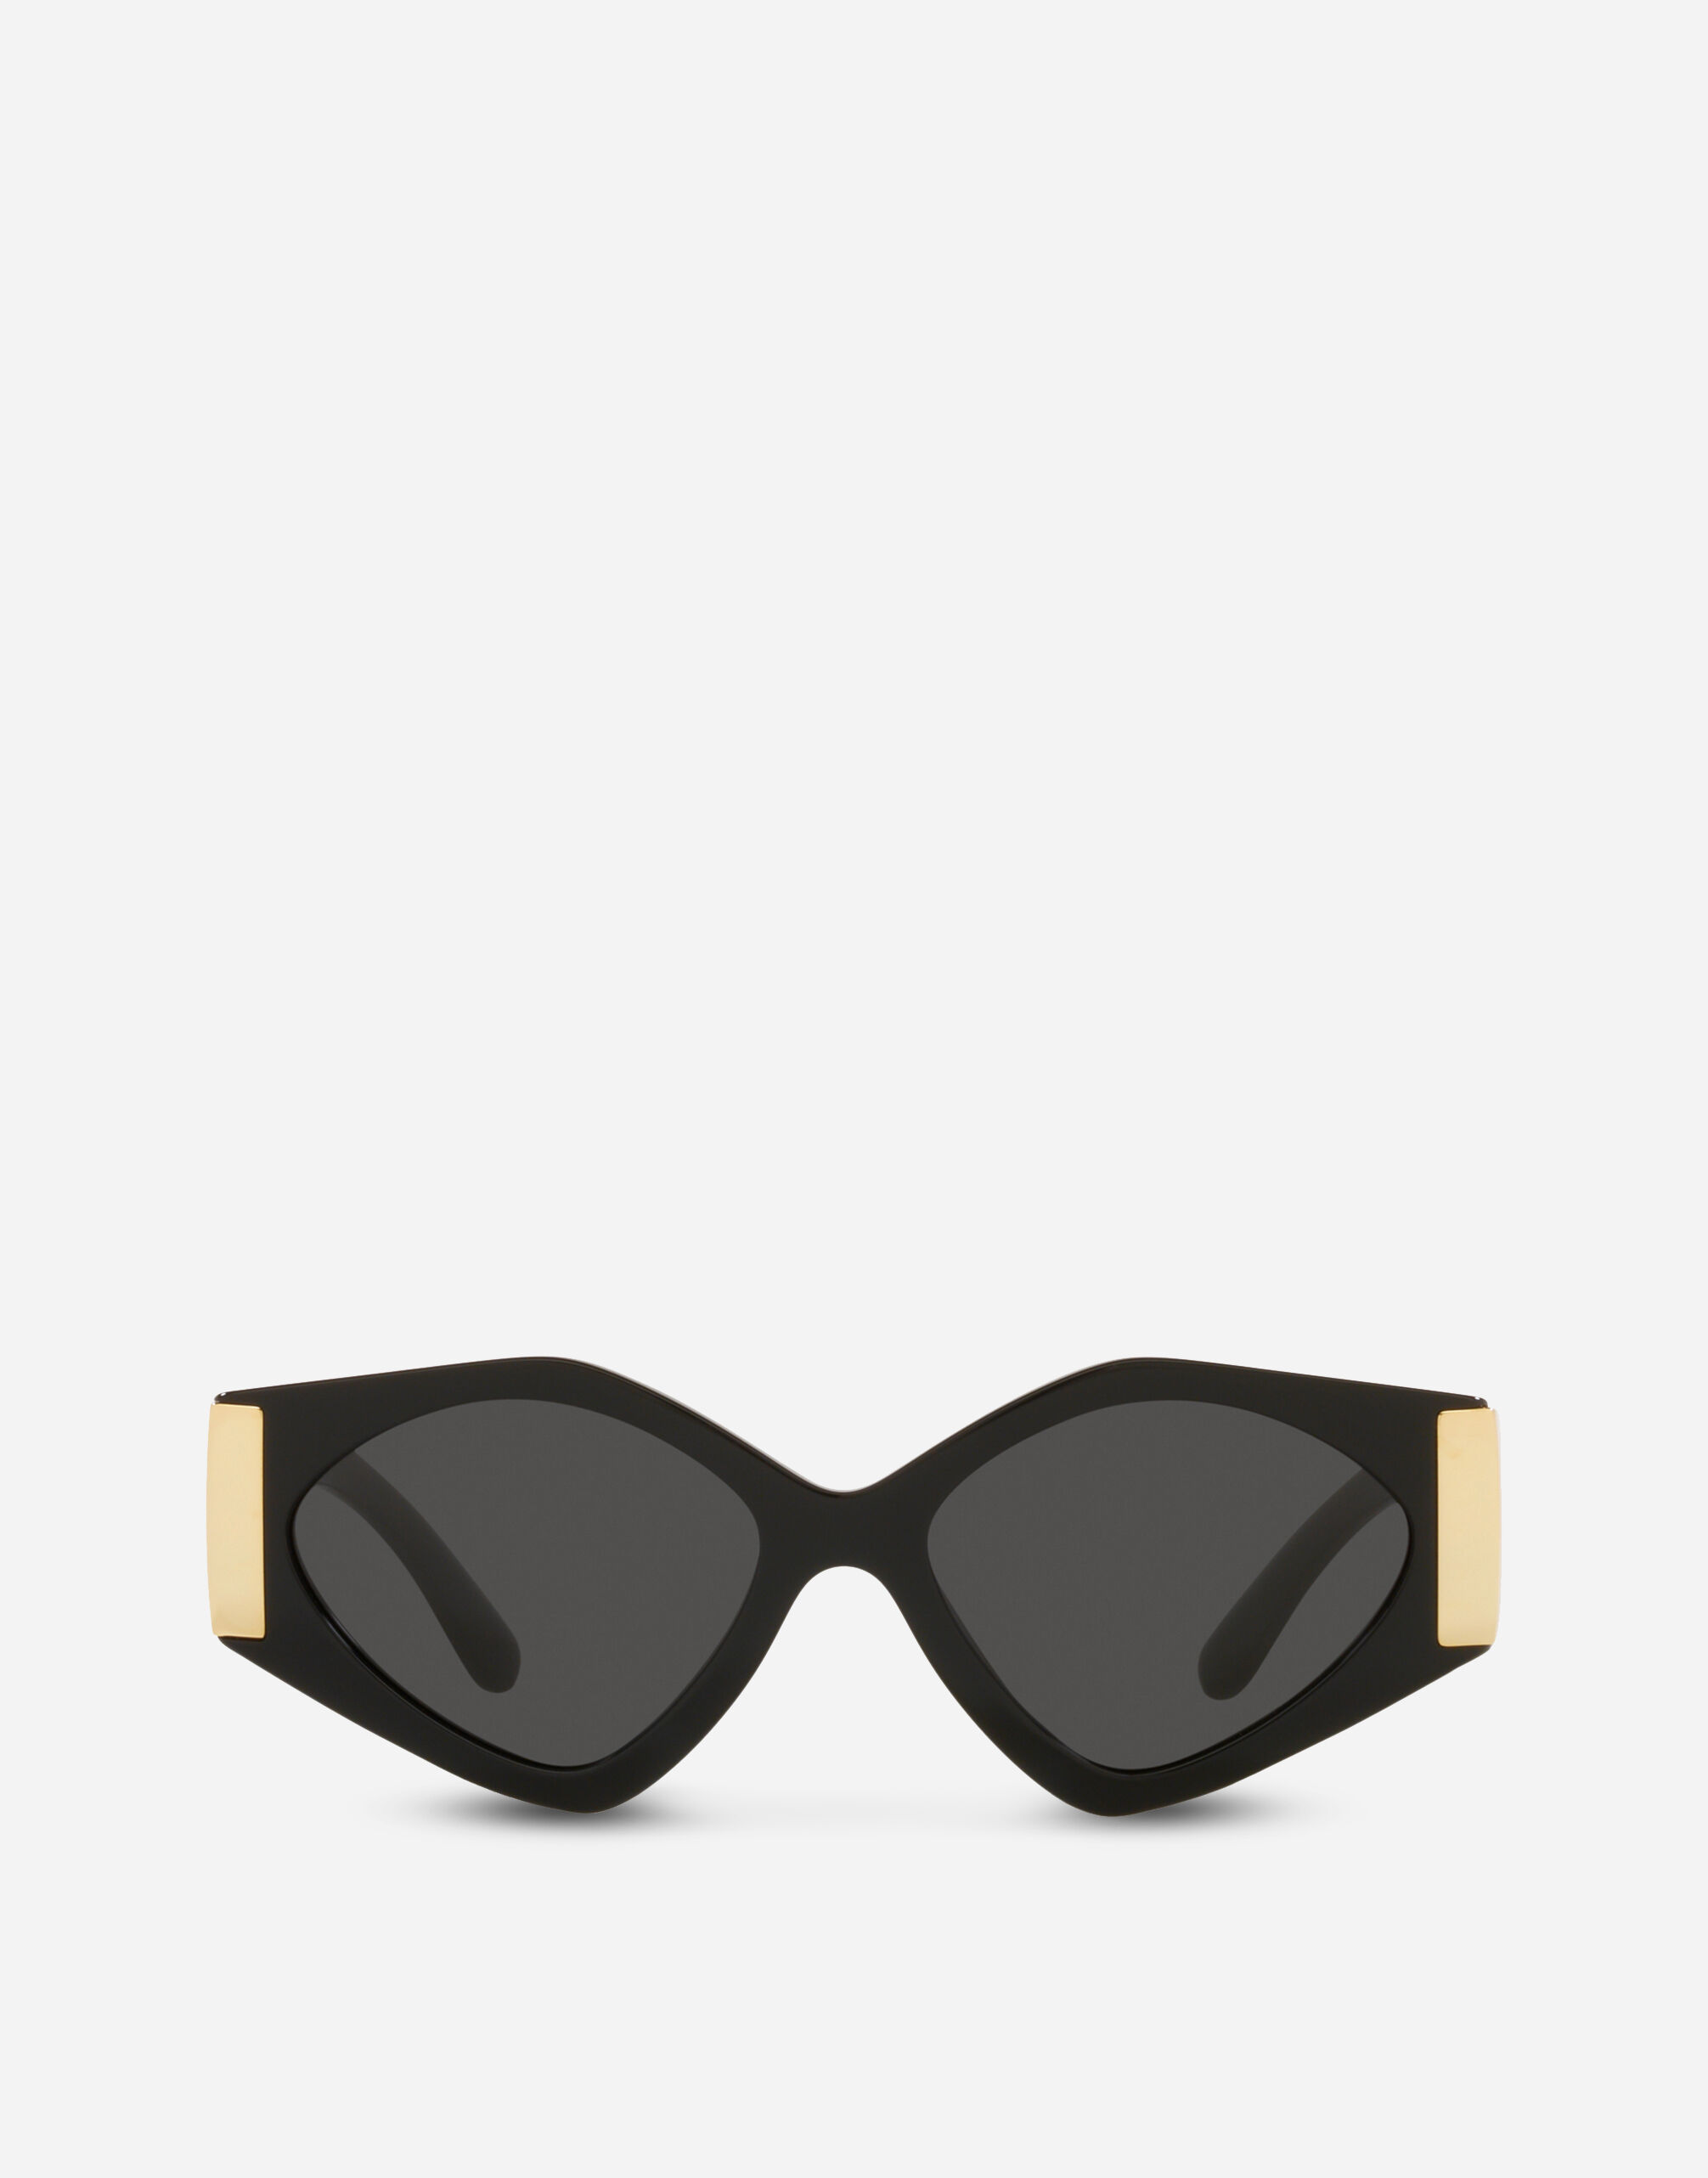 Dolce & Gabbana Modern print sunglasses Black F4CC8TFJMM2